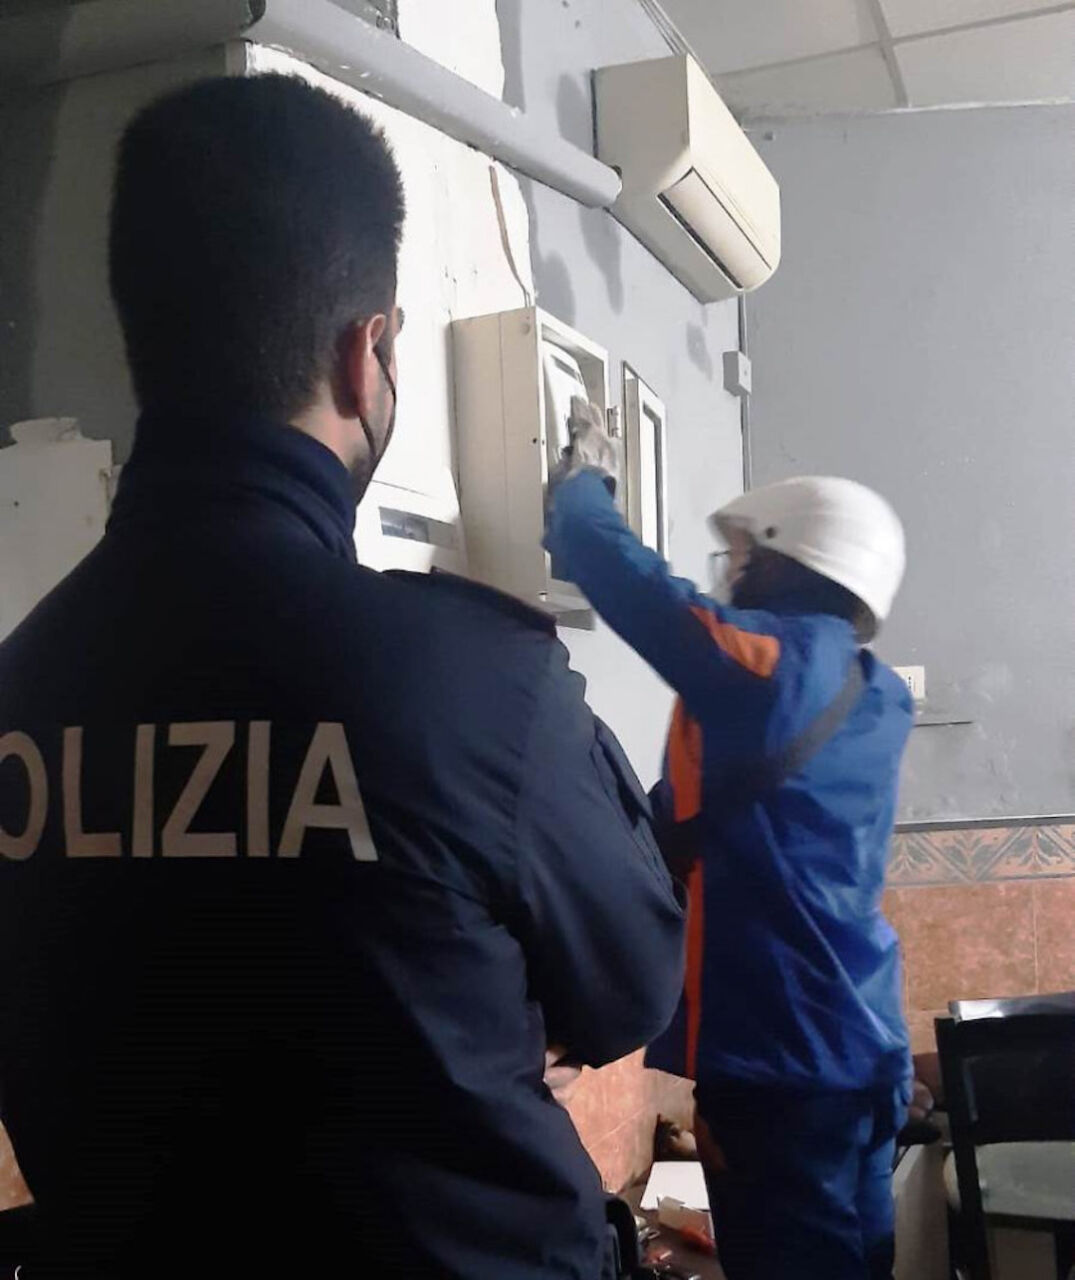 Napoli, furto di energia elettrica: chiuso circolo abusivo al Rione Sanità